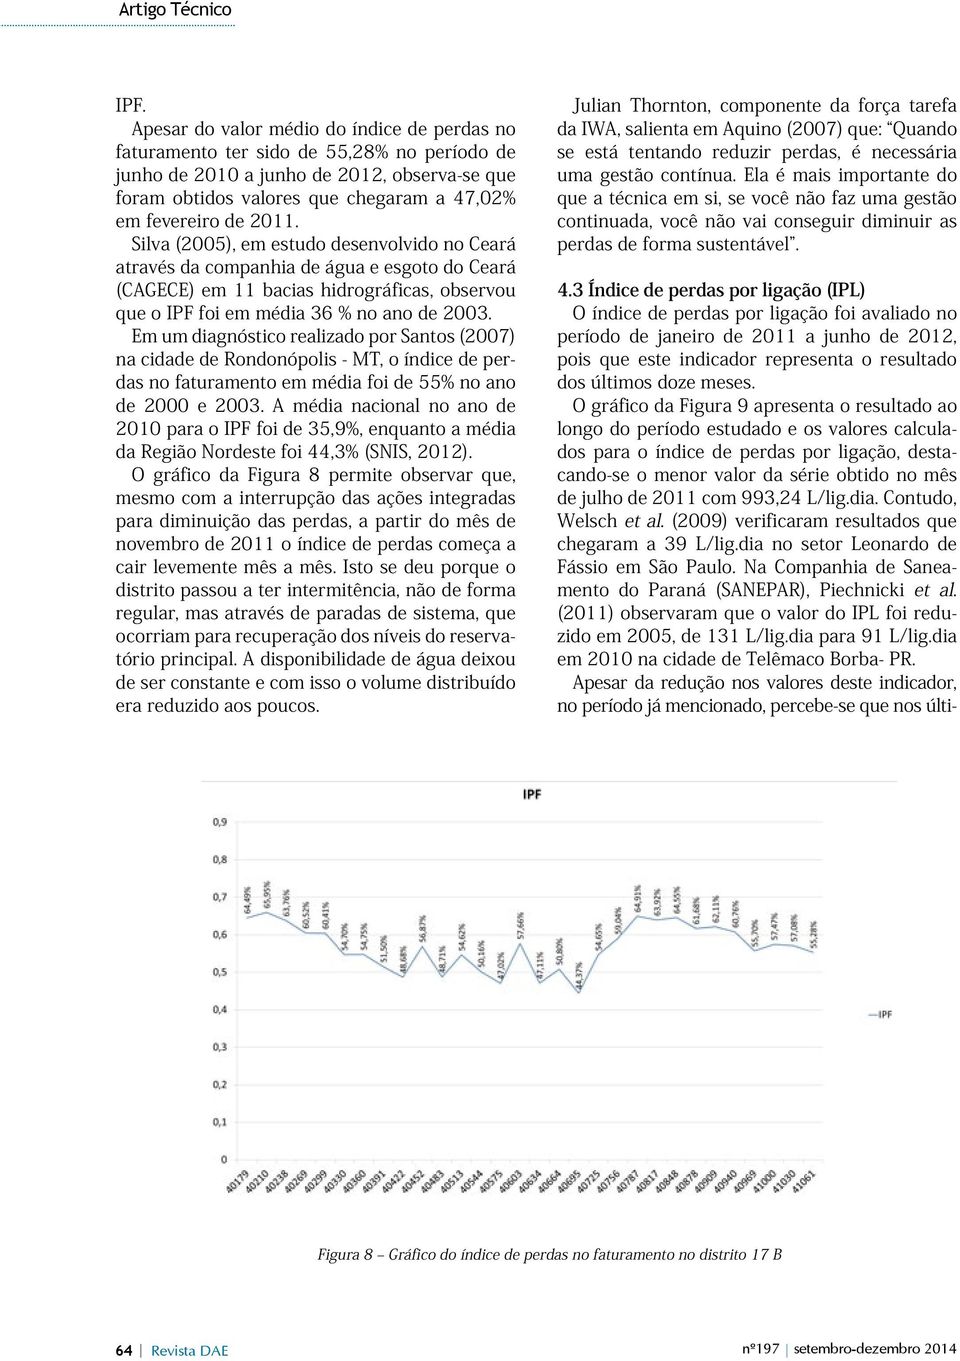 Em um diagnóstico realizado por Santos (2007) na cidade de Rondonópolis - MT, o índice de perdas no faturamento em média foi de 55% no ano de 2000 e 2003.